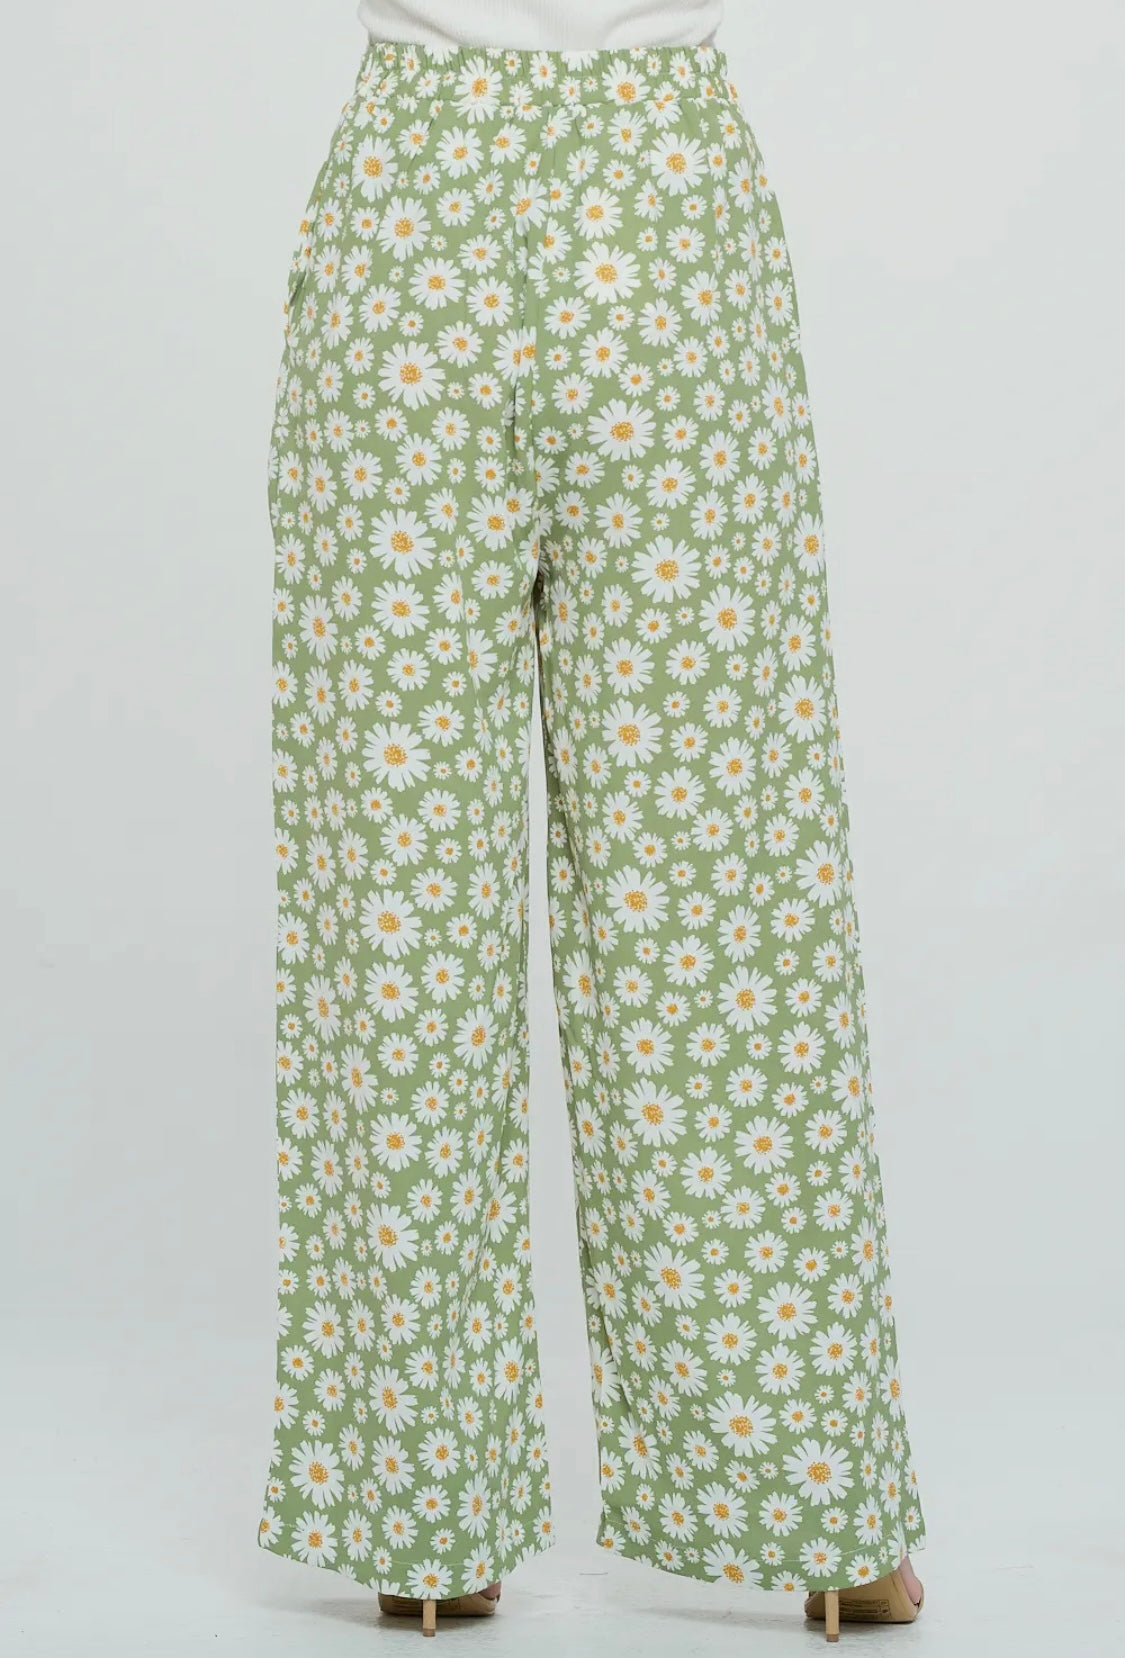 Daisy Green Pants